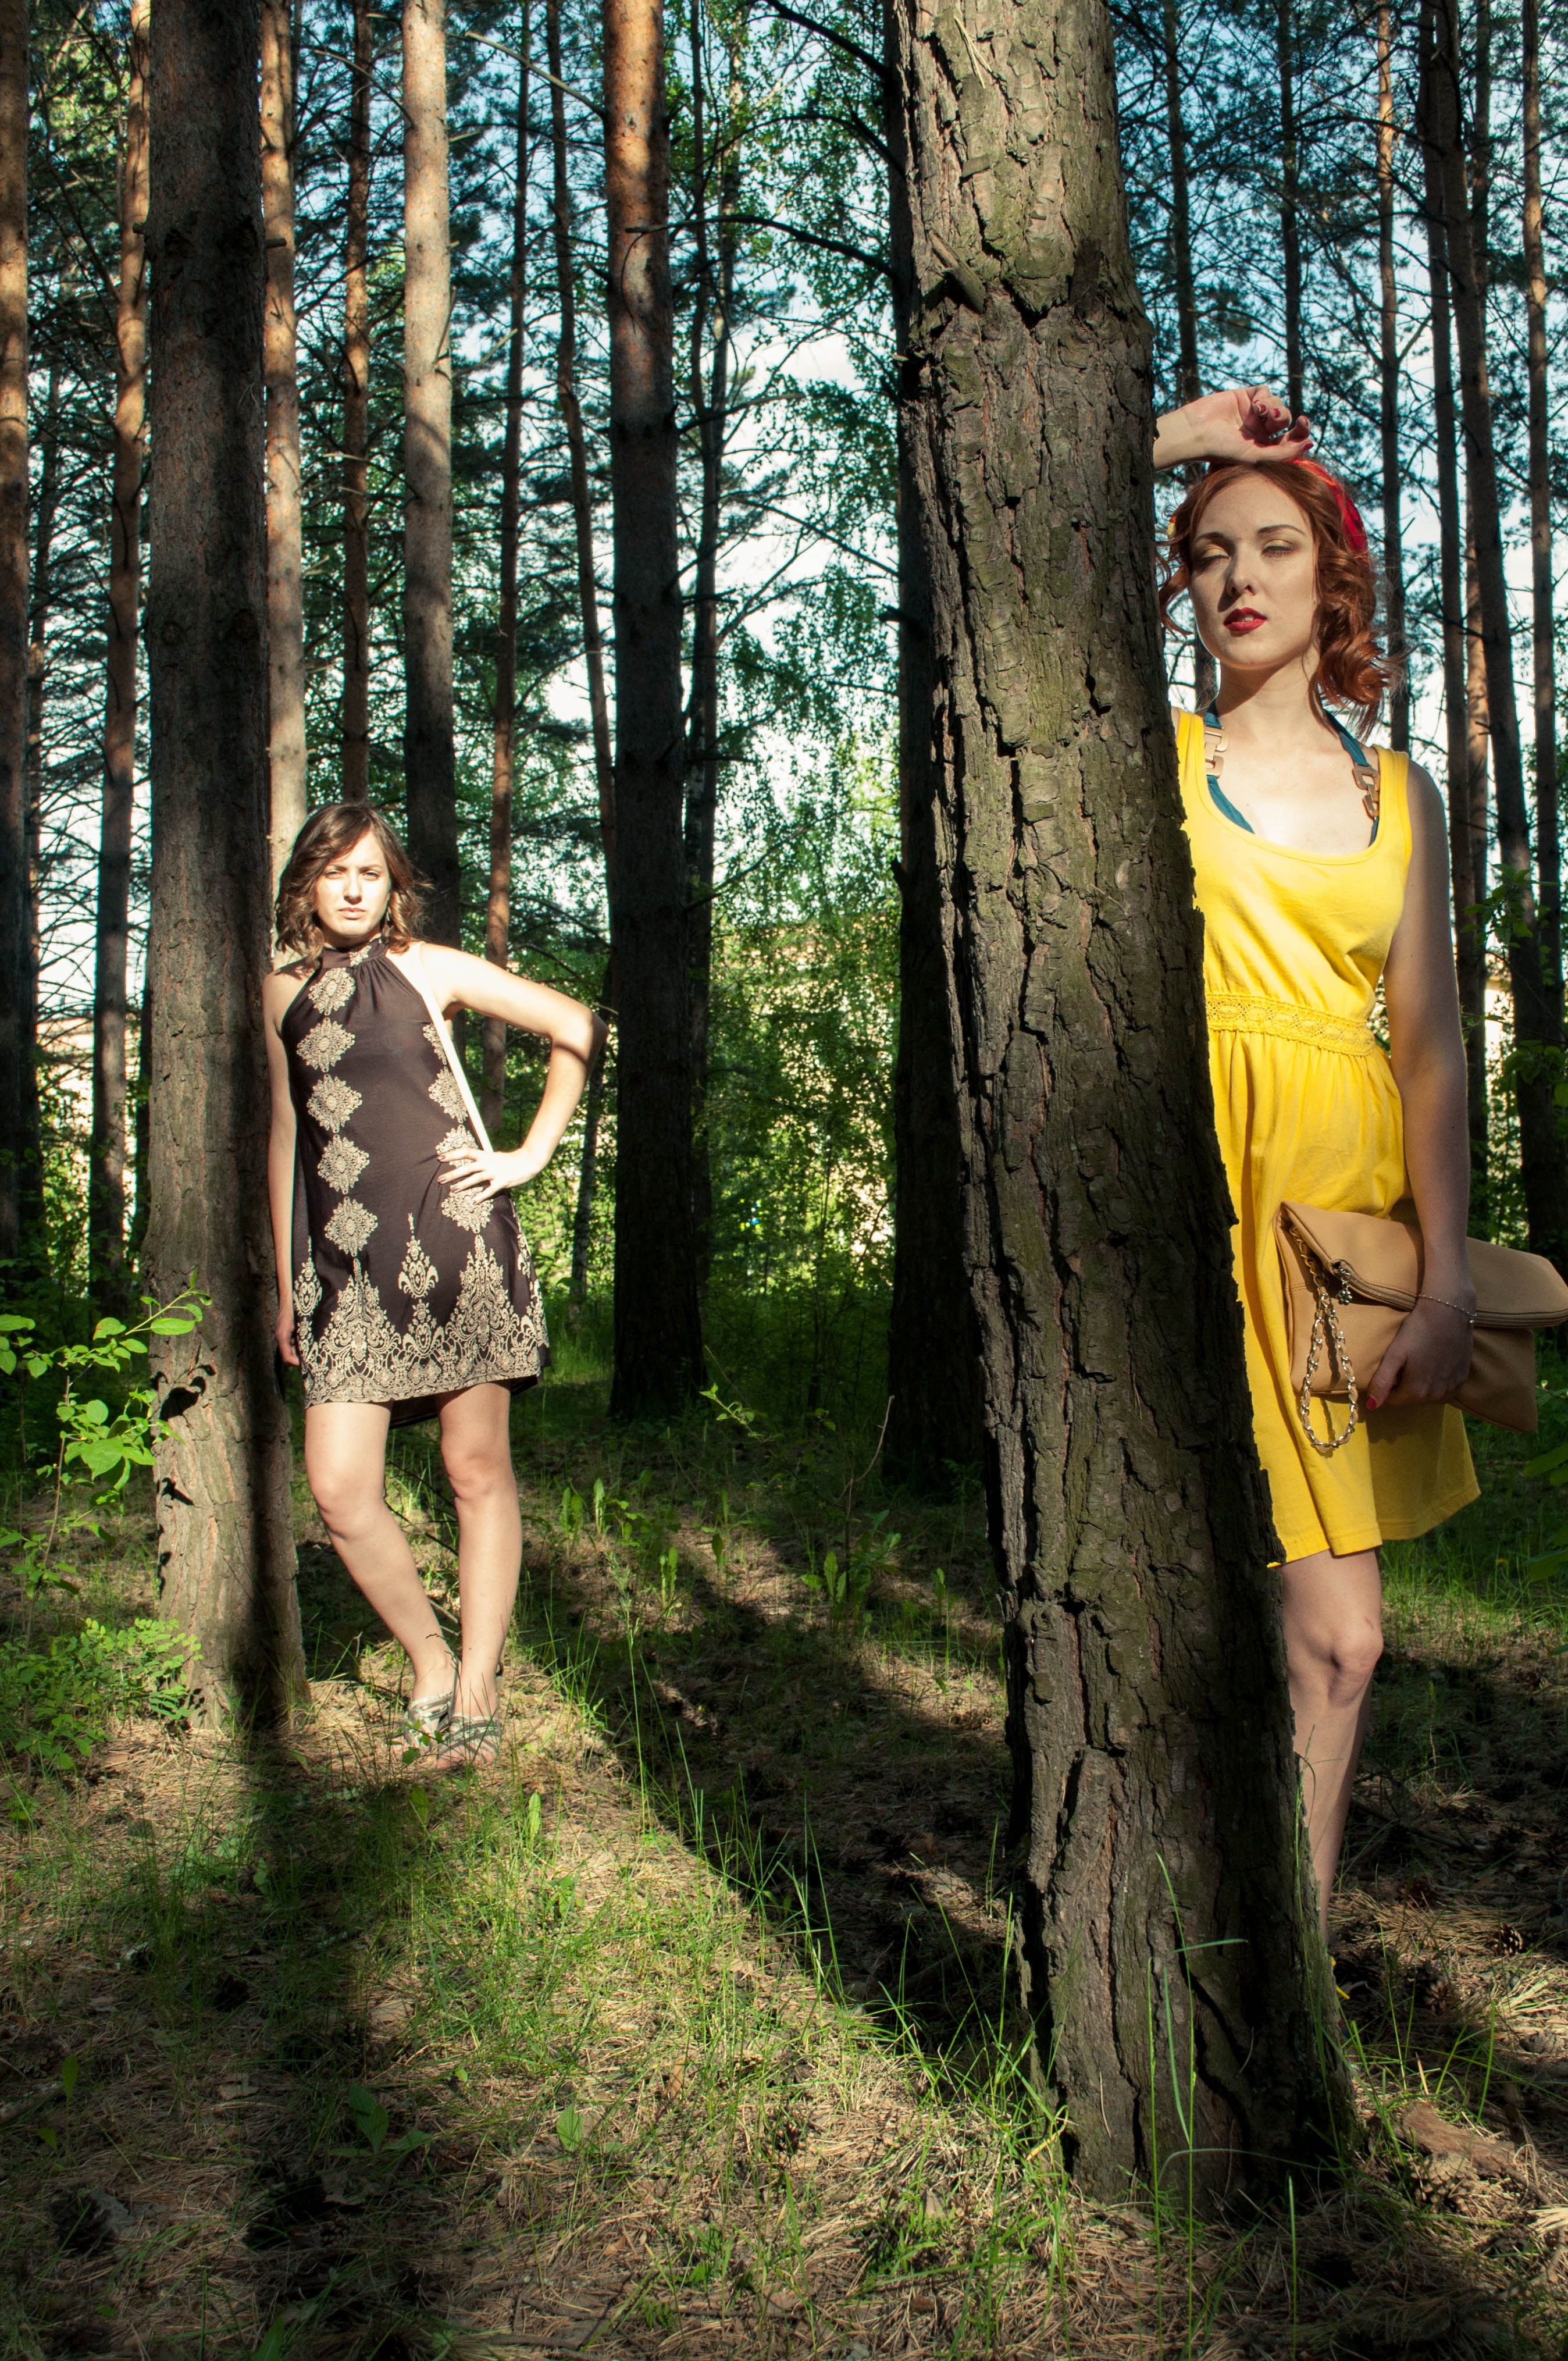 2 women in forest